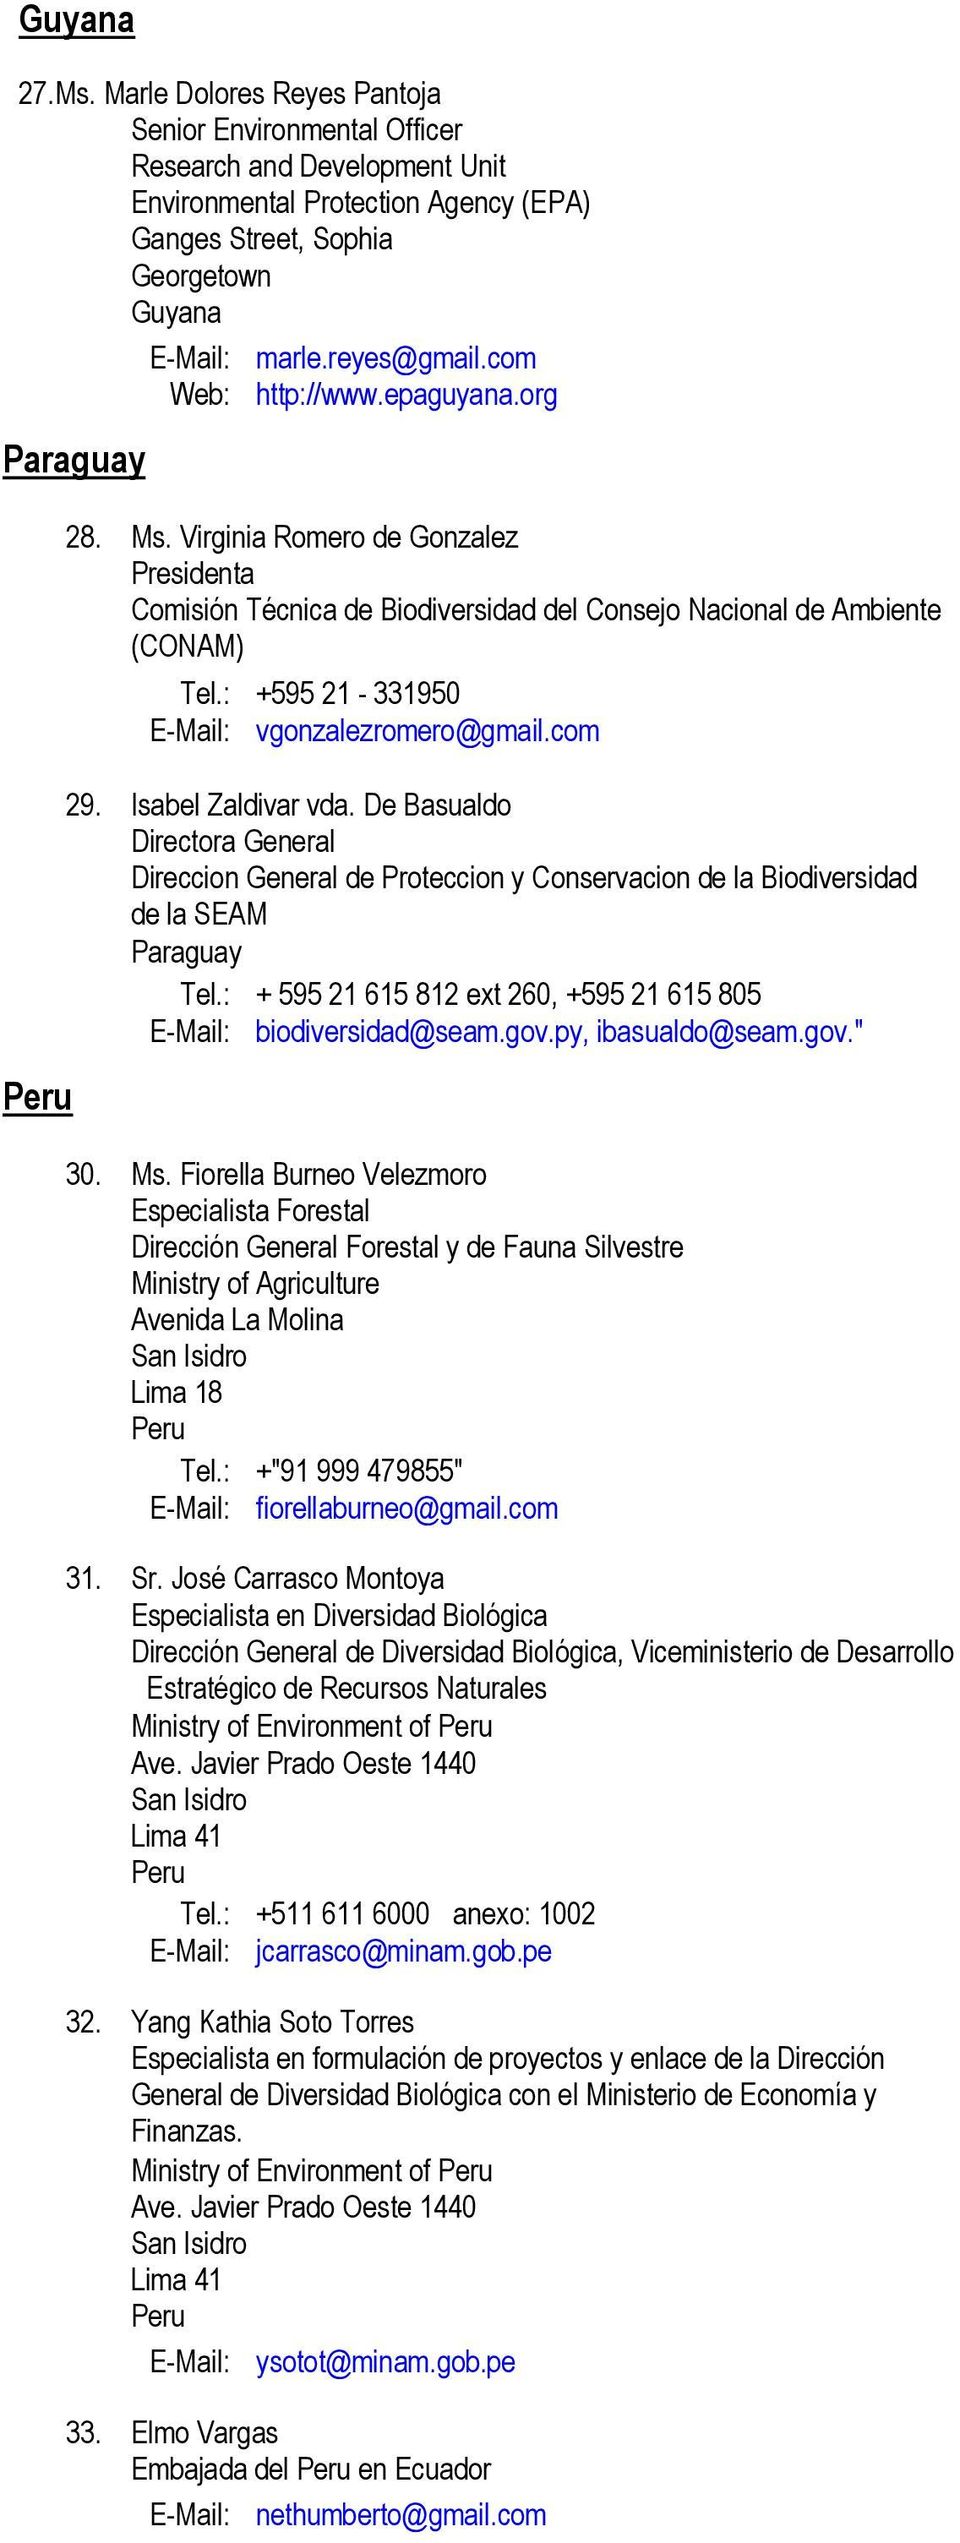 : +595 21-331950 E-Mail: vgonzalezromero@gmail.com 29. Isabel Zaldivar vda. De Basualdo Directora General Direccion General de Proteccion y Conservacion de la Biodiversidad de la SEAM Paraguay Tel.